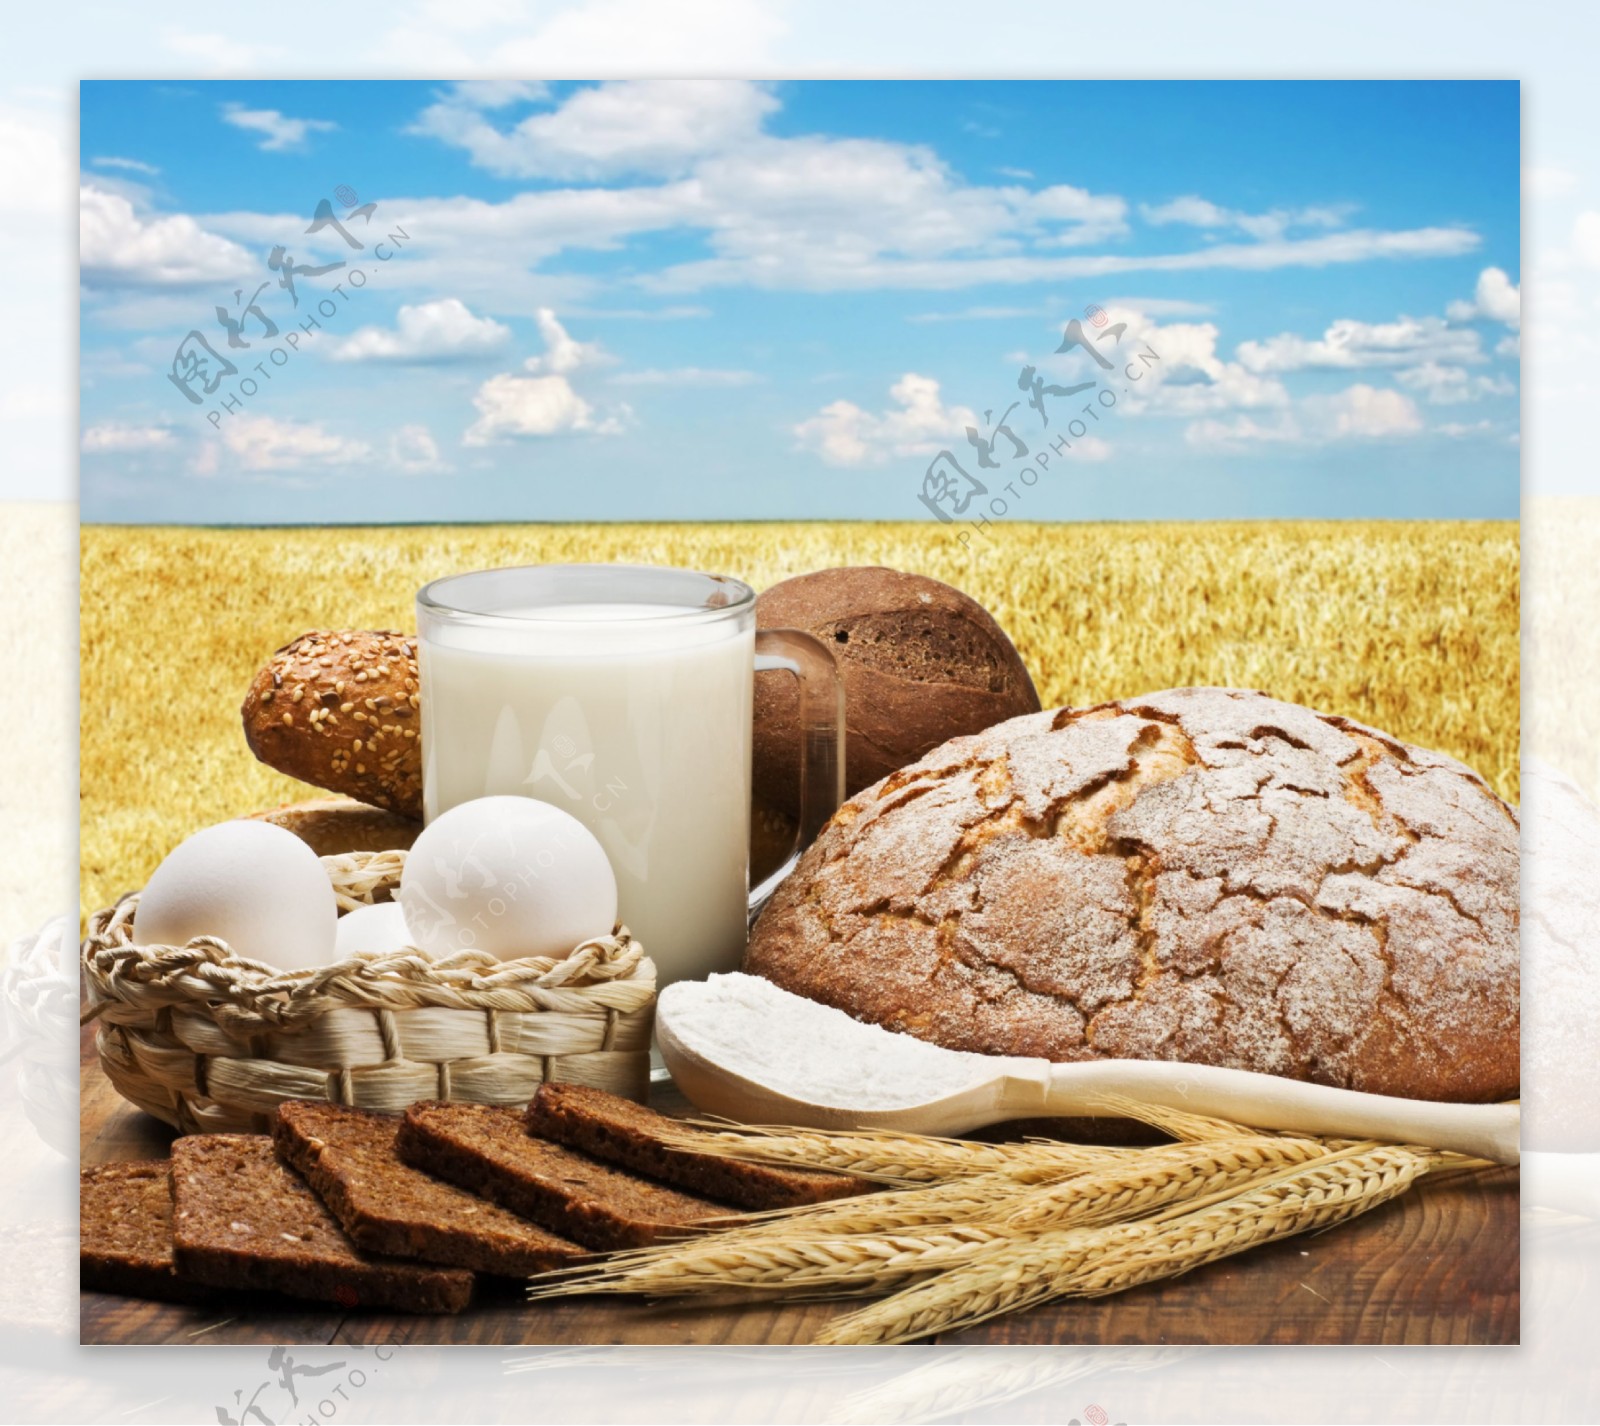 麦田风景与面包牛奶鸡蛋图片